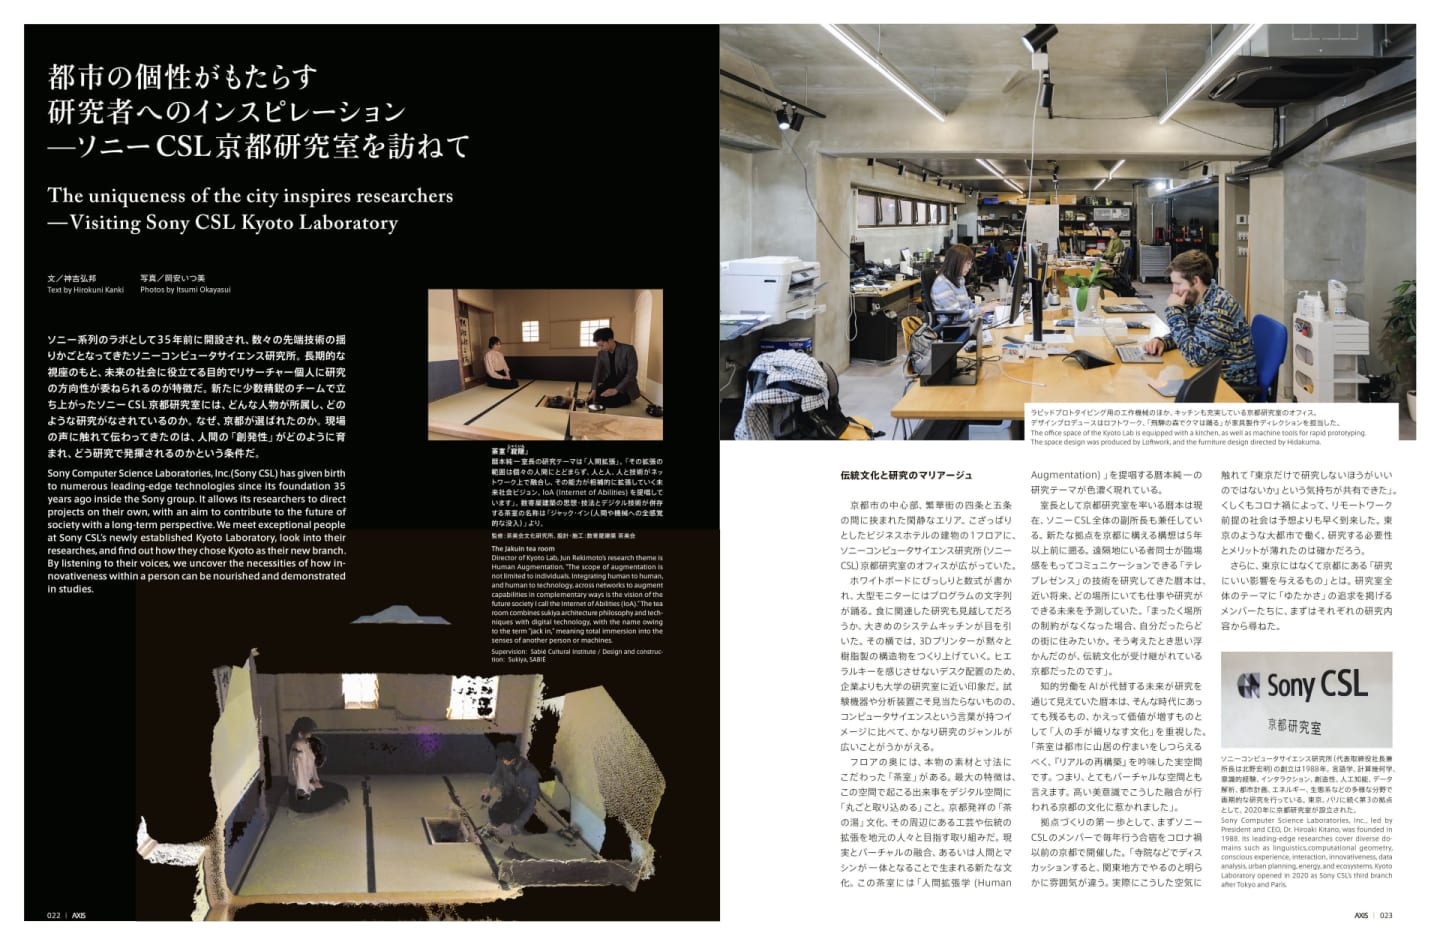 都市の個性がもたらす 研究者へのインスピレーション ――ソニーCSL 京都研究室を訪ねて